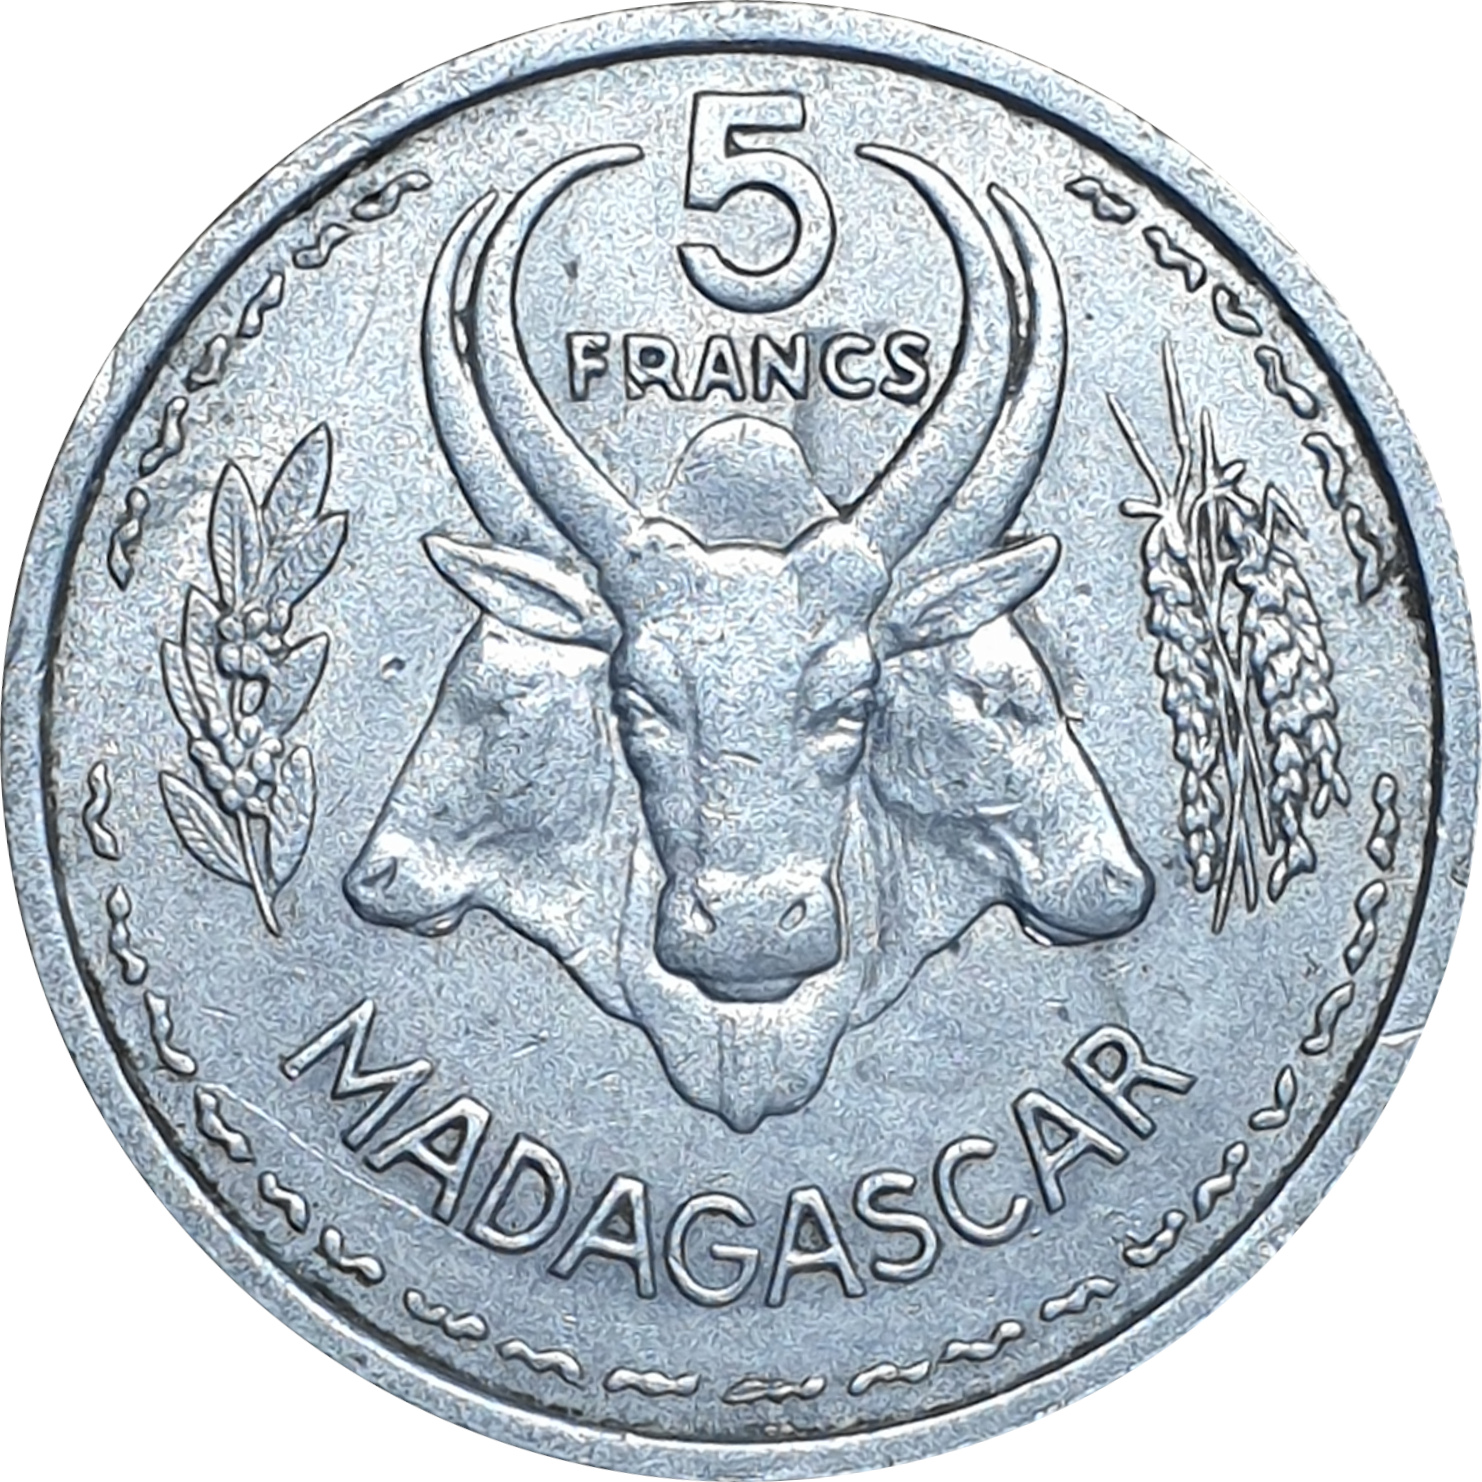 5 francs - Oryx